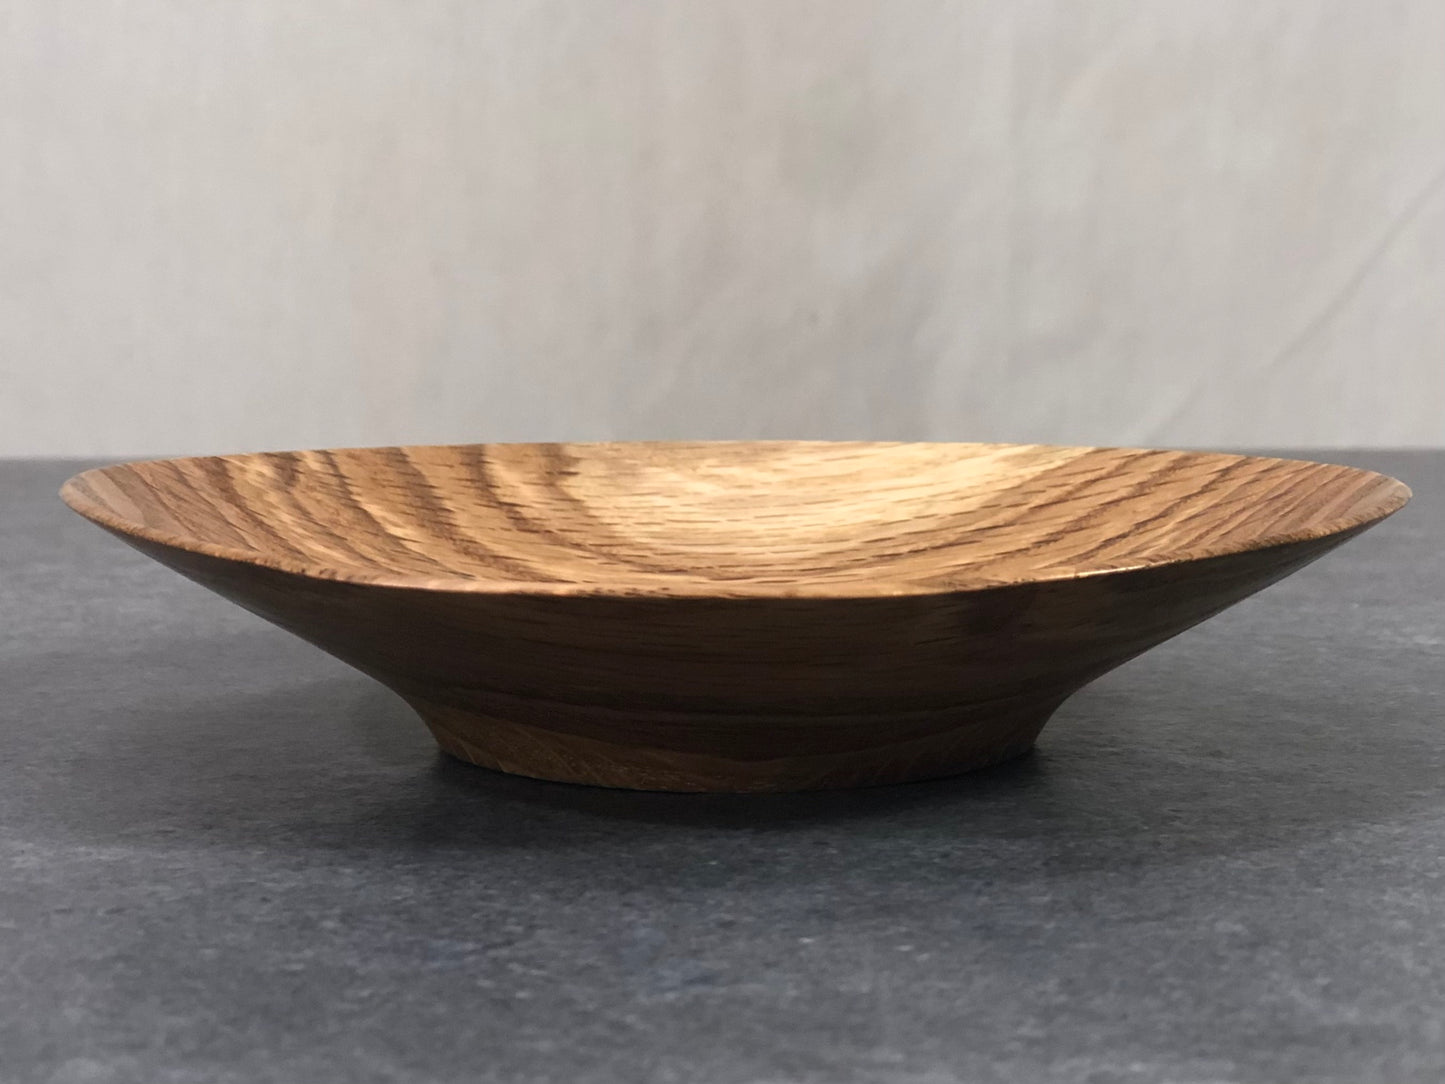 Small Thin Walled Oak Bowl no. 2248